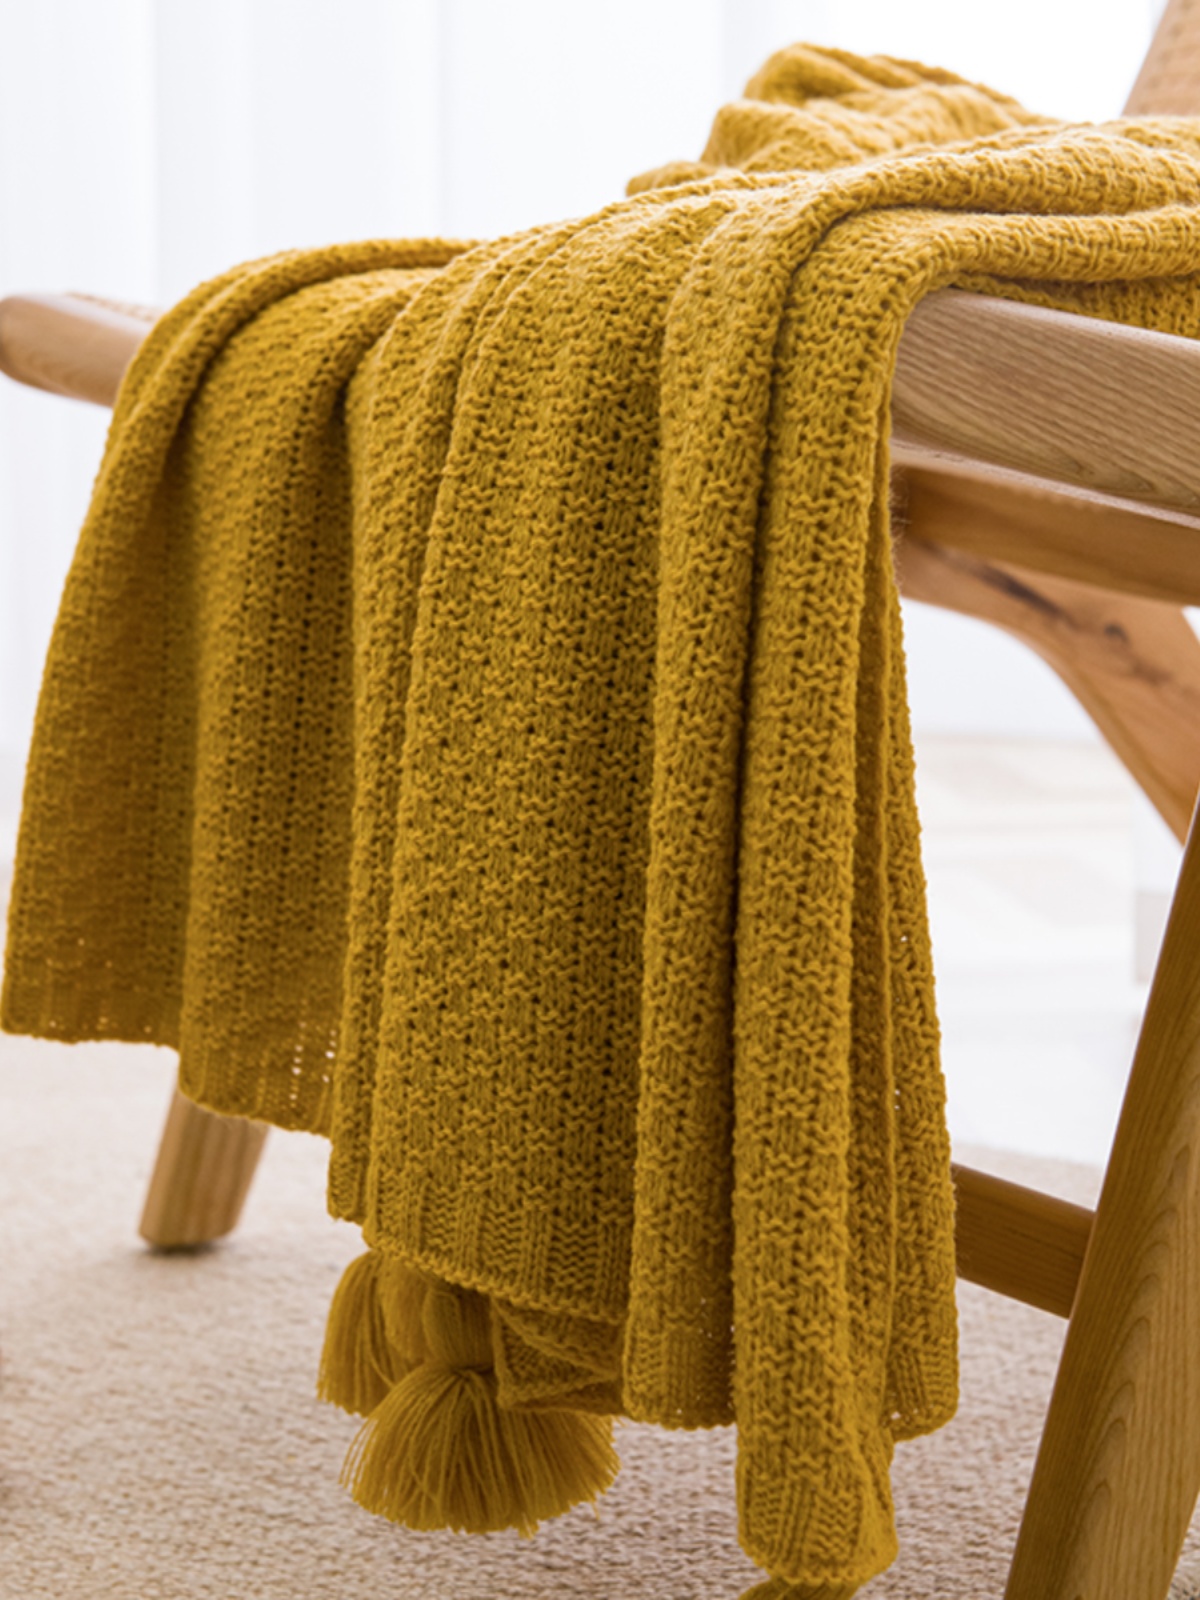 北歐風輕奢午睡毯 沙發空調毯 針織小毯子披肩蓋毯床尾毯 適用客廳臥室四季通用